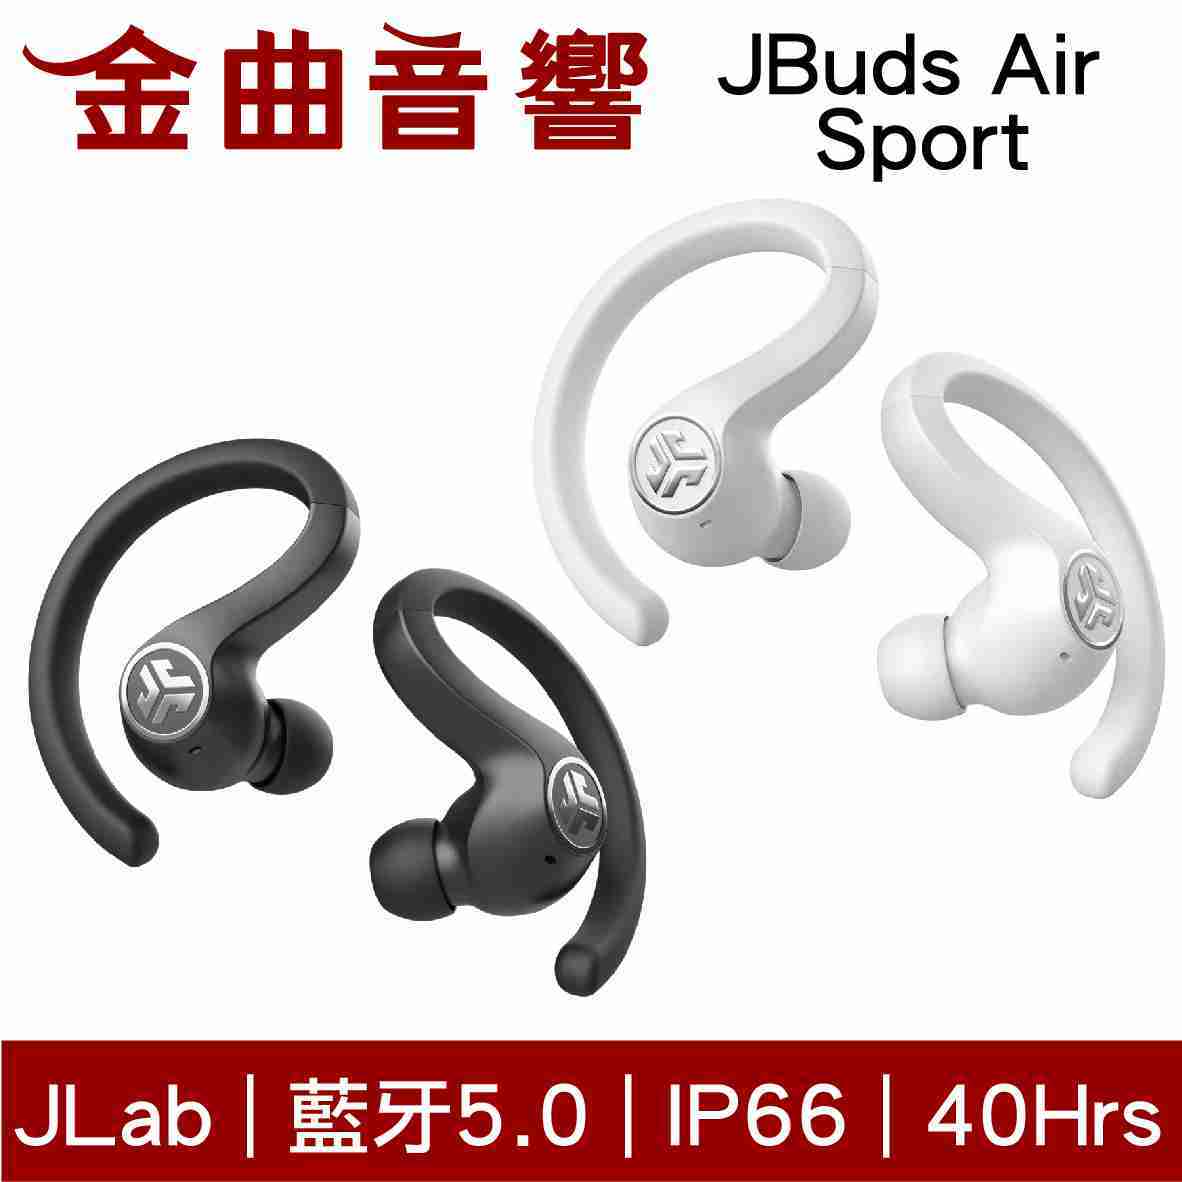 【 現貨 】JLab Jbuds Air SPORT 黑色 無線耳機 | 金曲音響